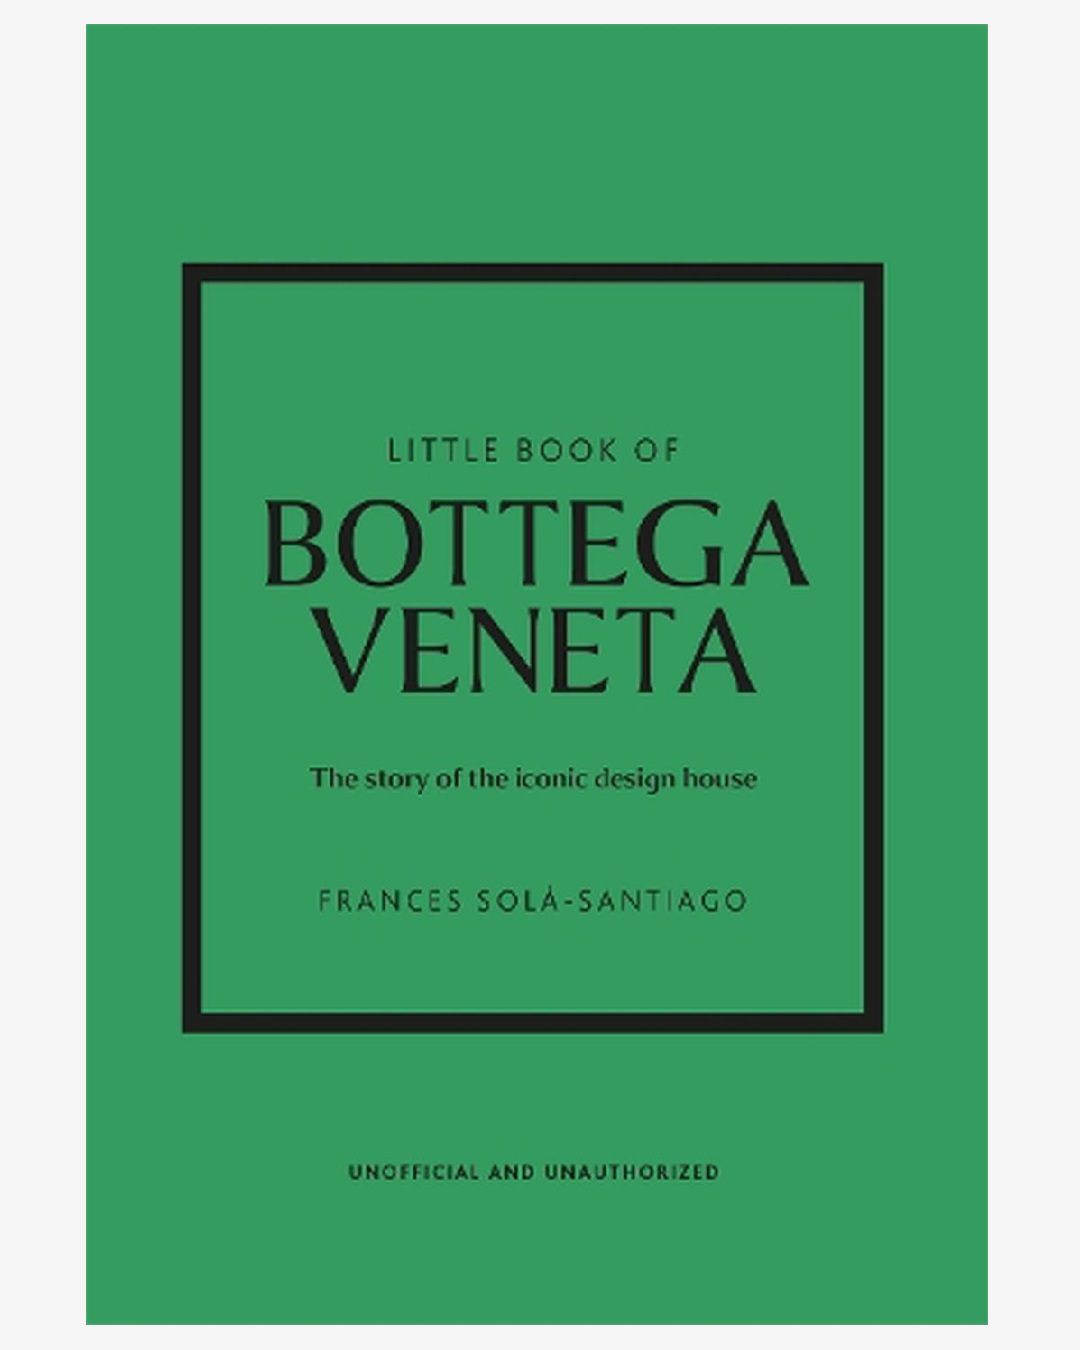 Green book Little book of bottega veneta